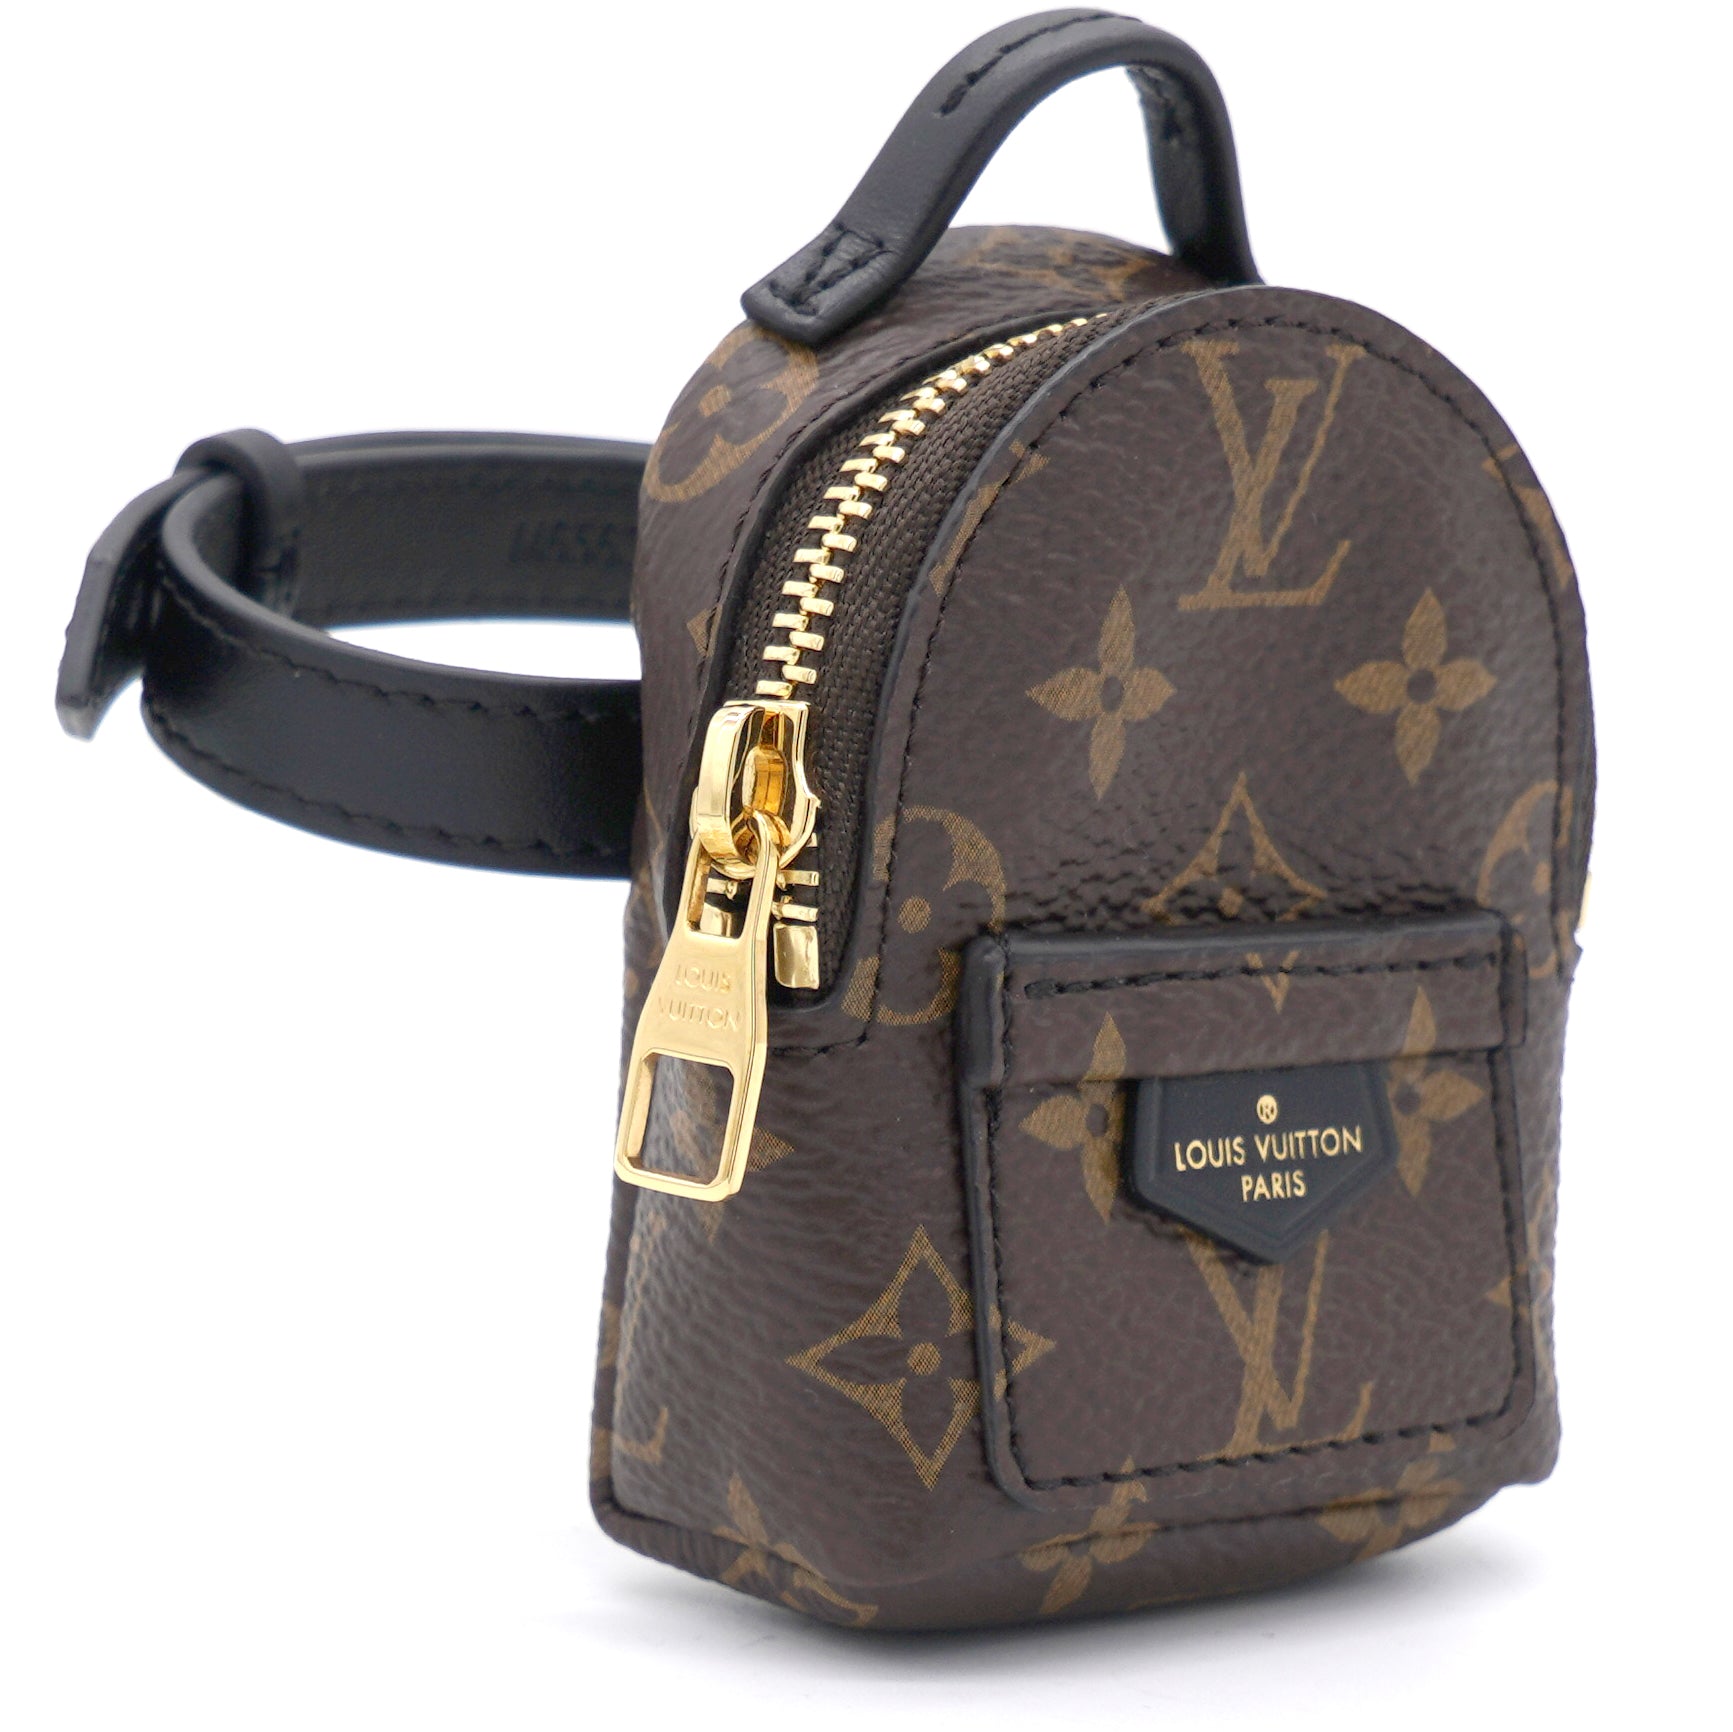 Louis Vuitton Party Bag Bracelets